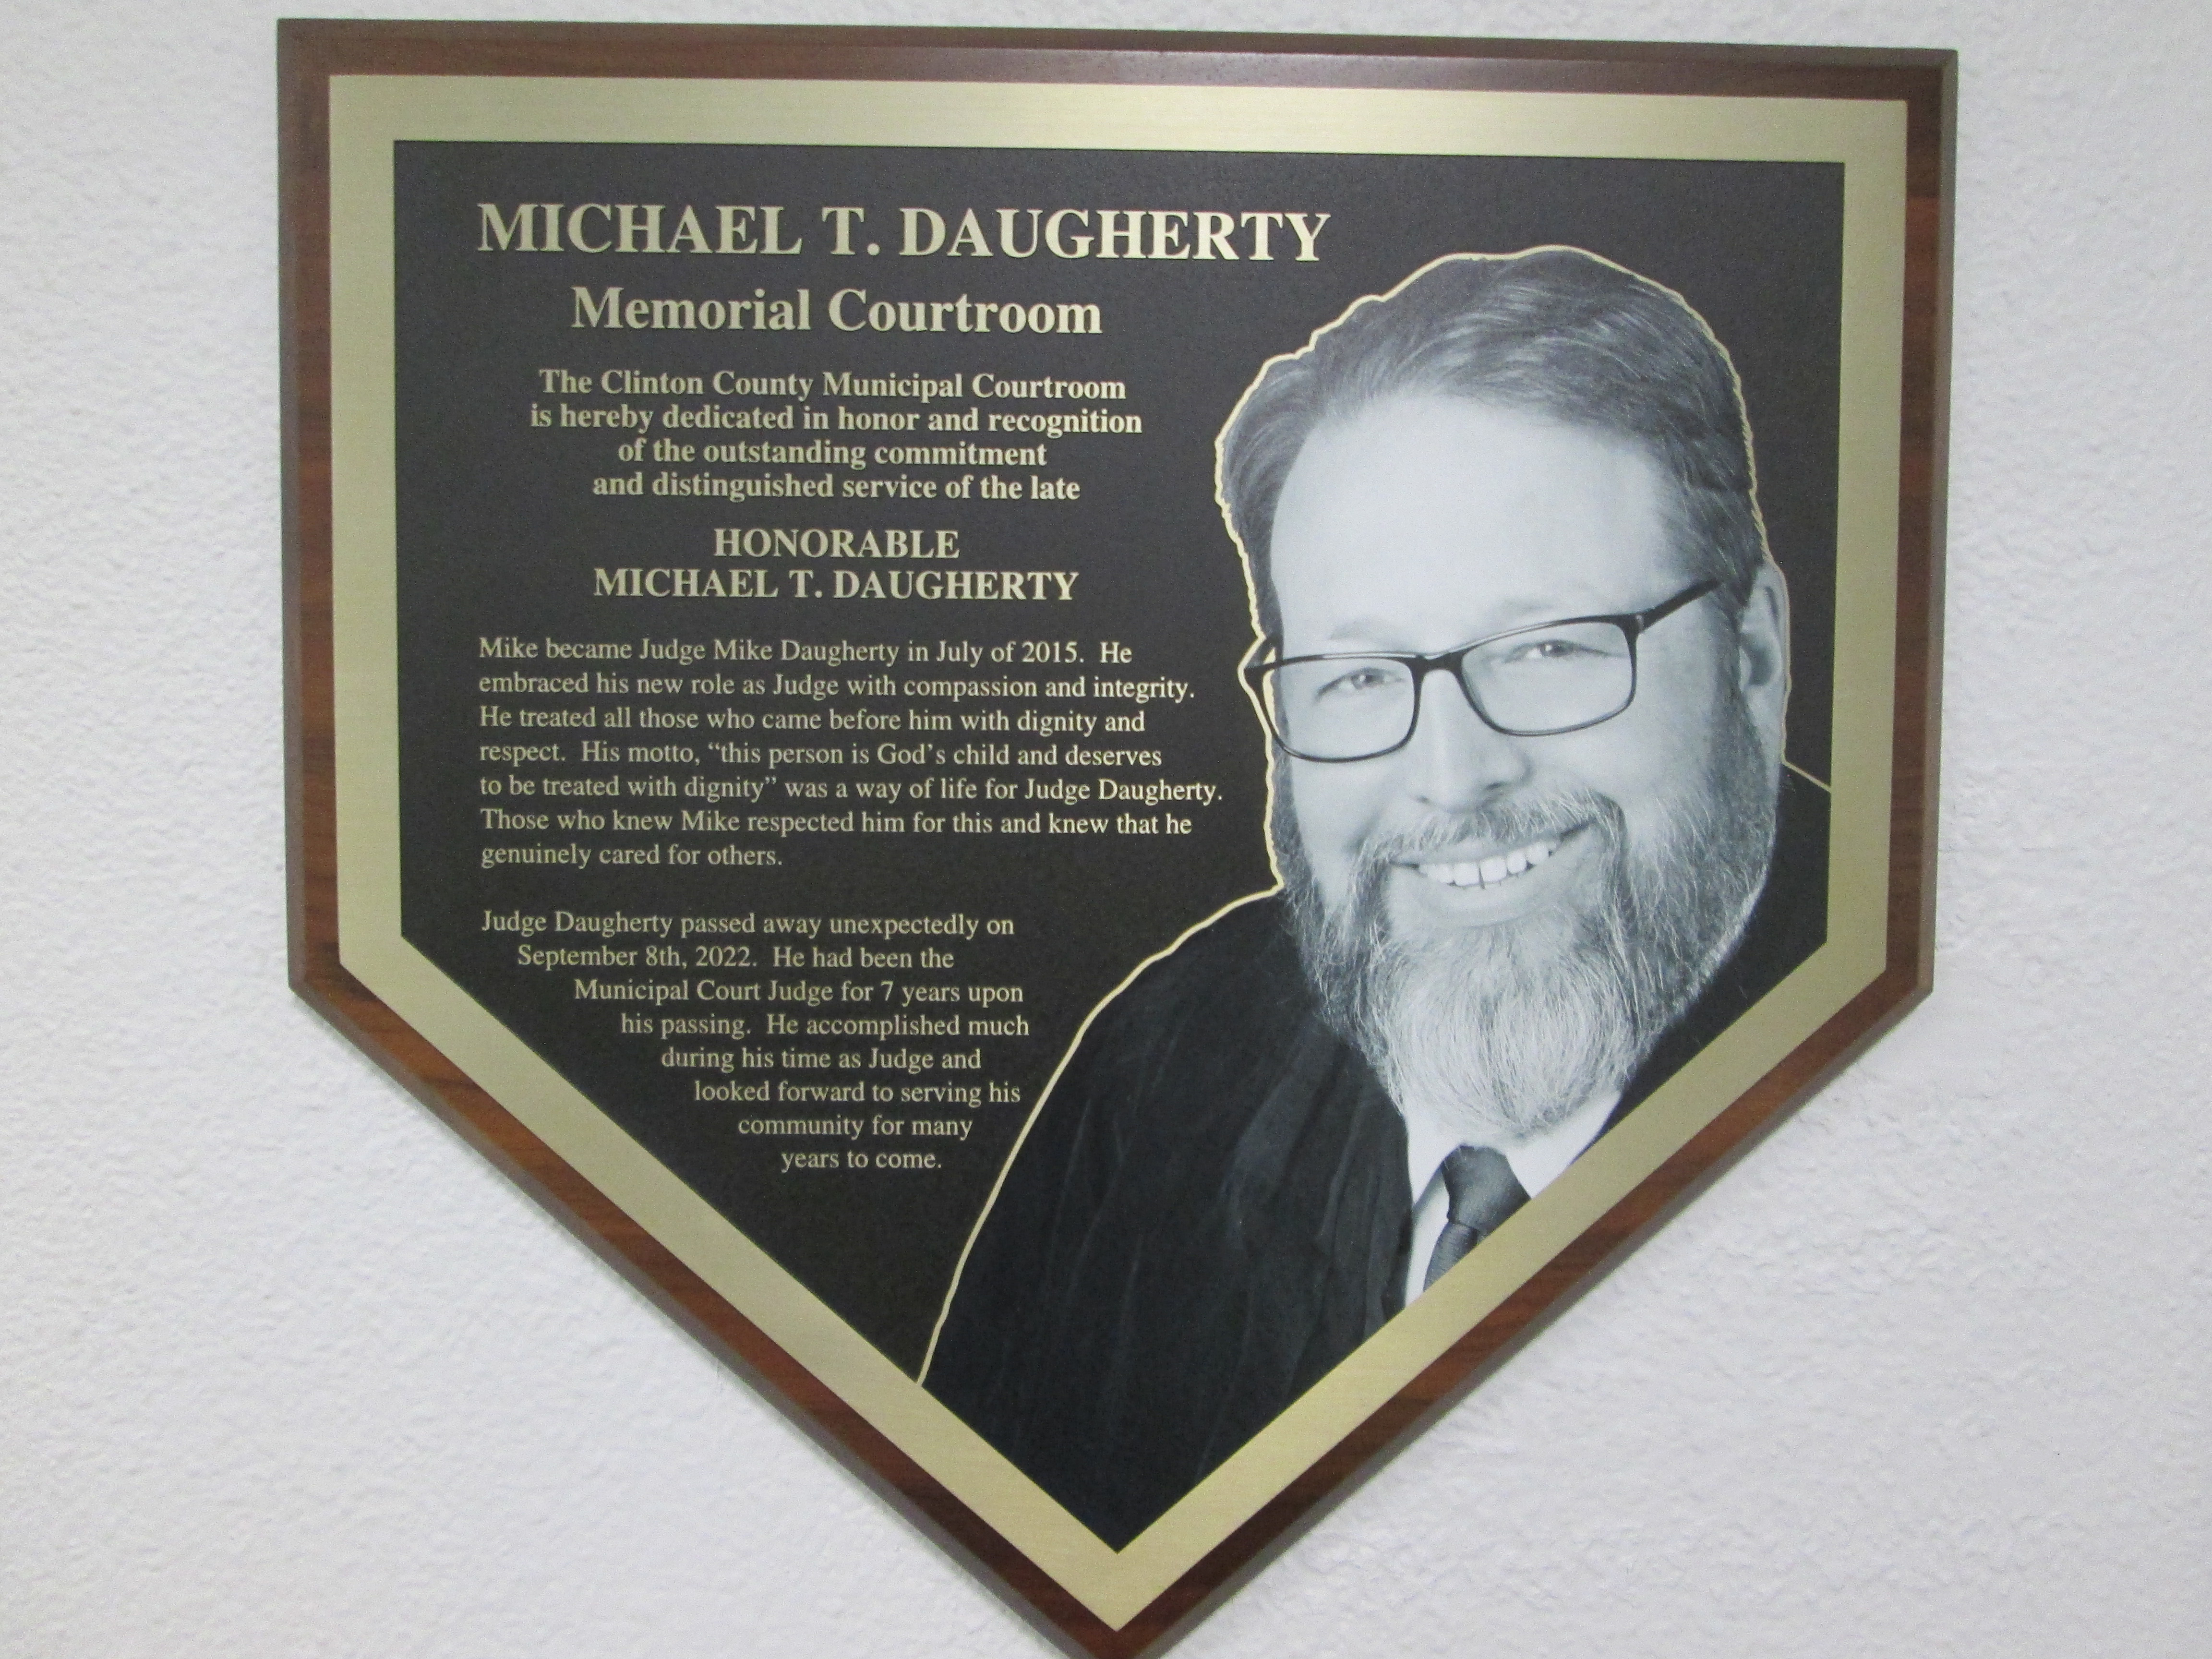 Photo of Judge Daugherty Memorial